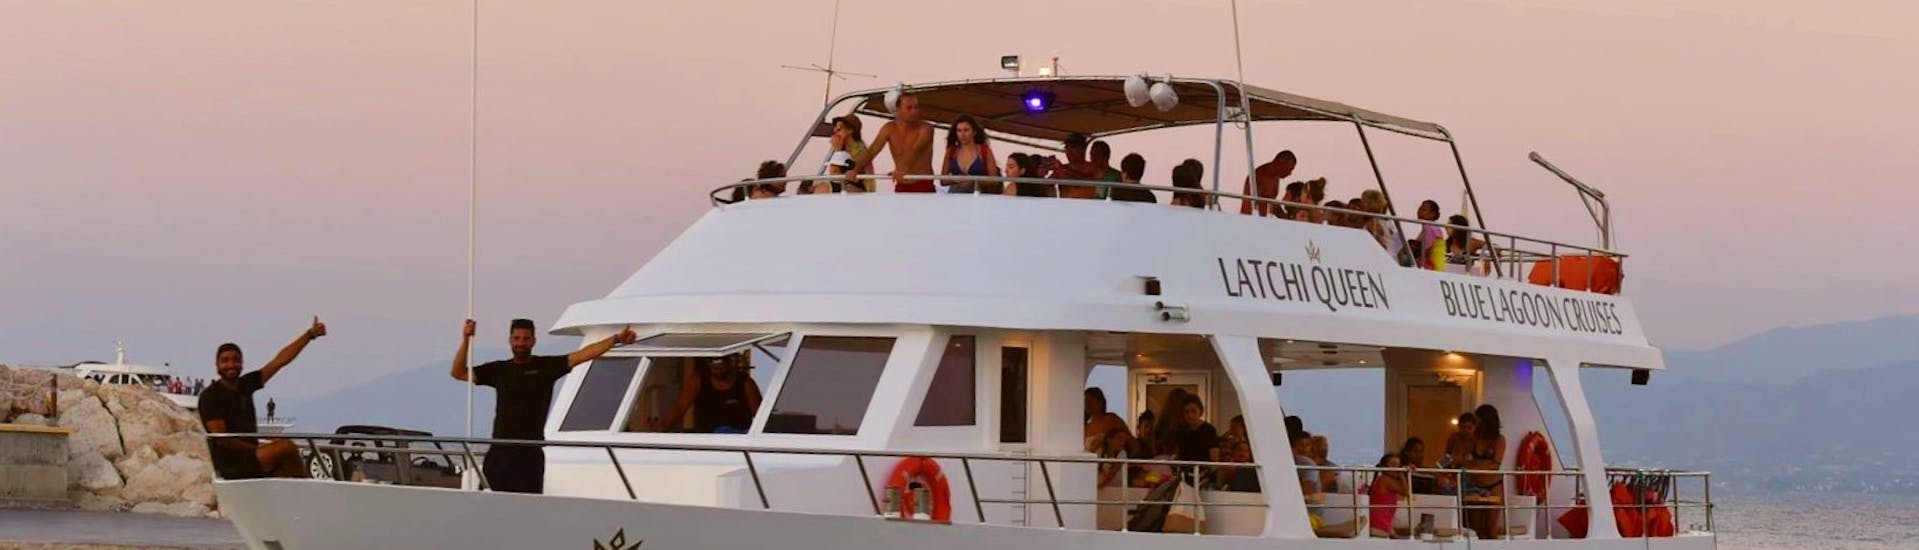 Balade en bateau au coucher du soleil au Lagon Bleu depuis Latchi.